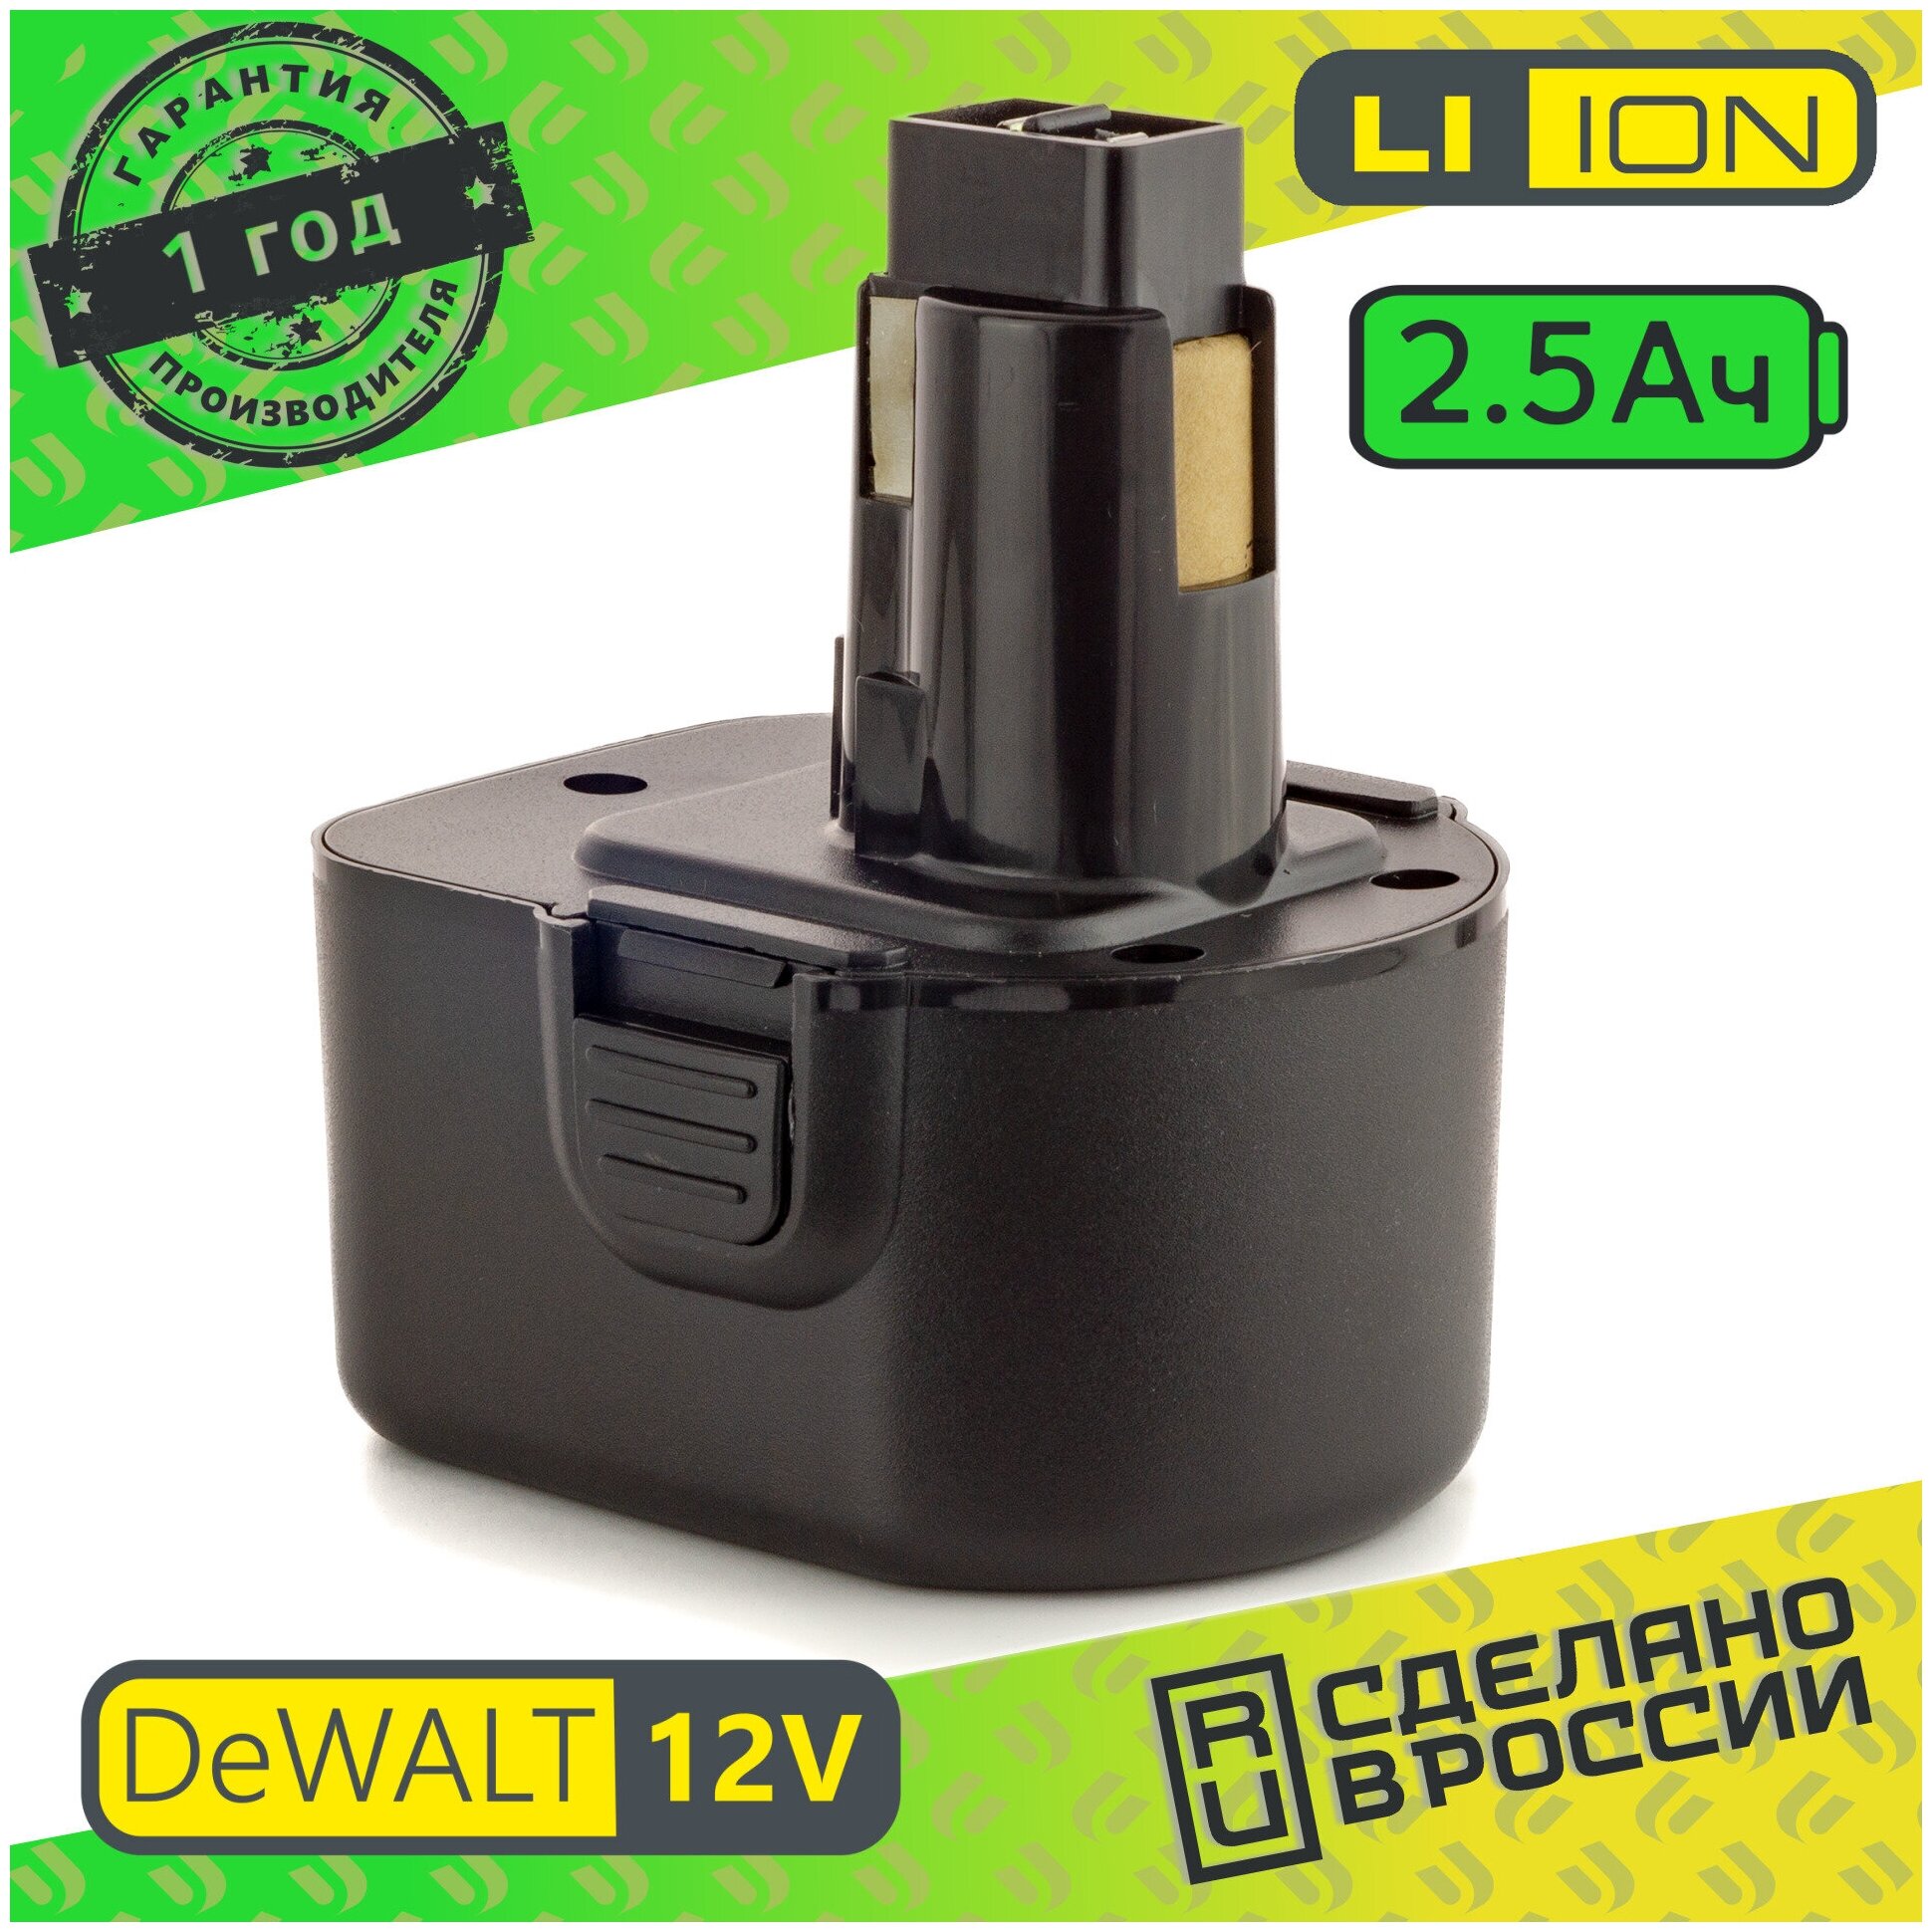 Аккумулятор для DeWalt DE9501 Li-ion 12V 2.5 Ah